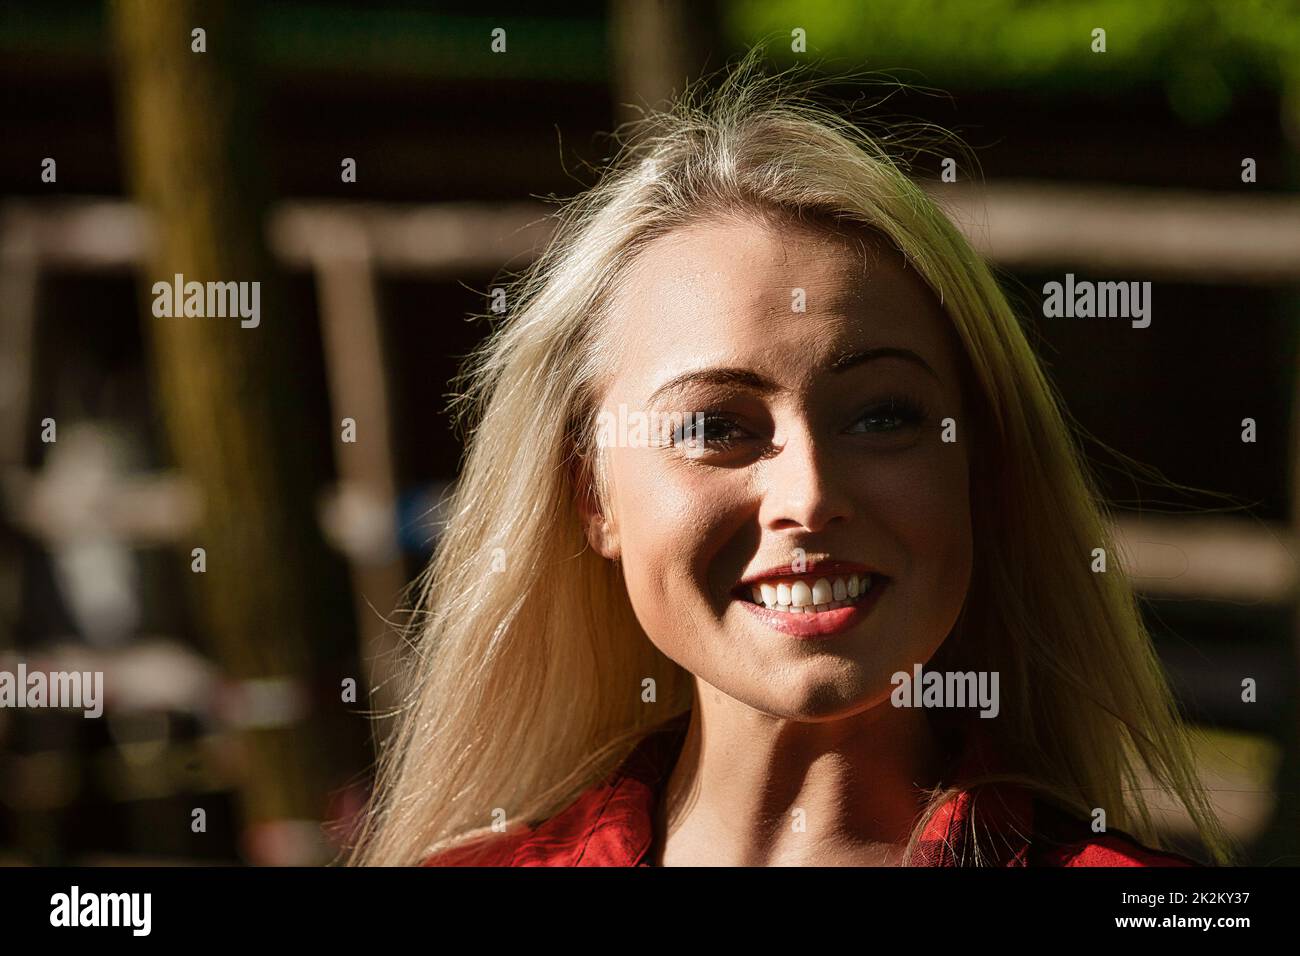 Ritratto ad alto contrasto di una giovane donna bionda sorridente Foto Stock